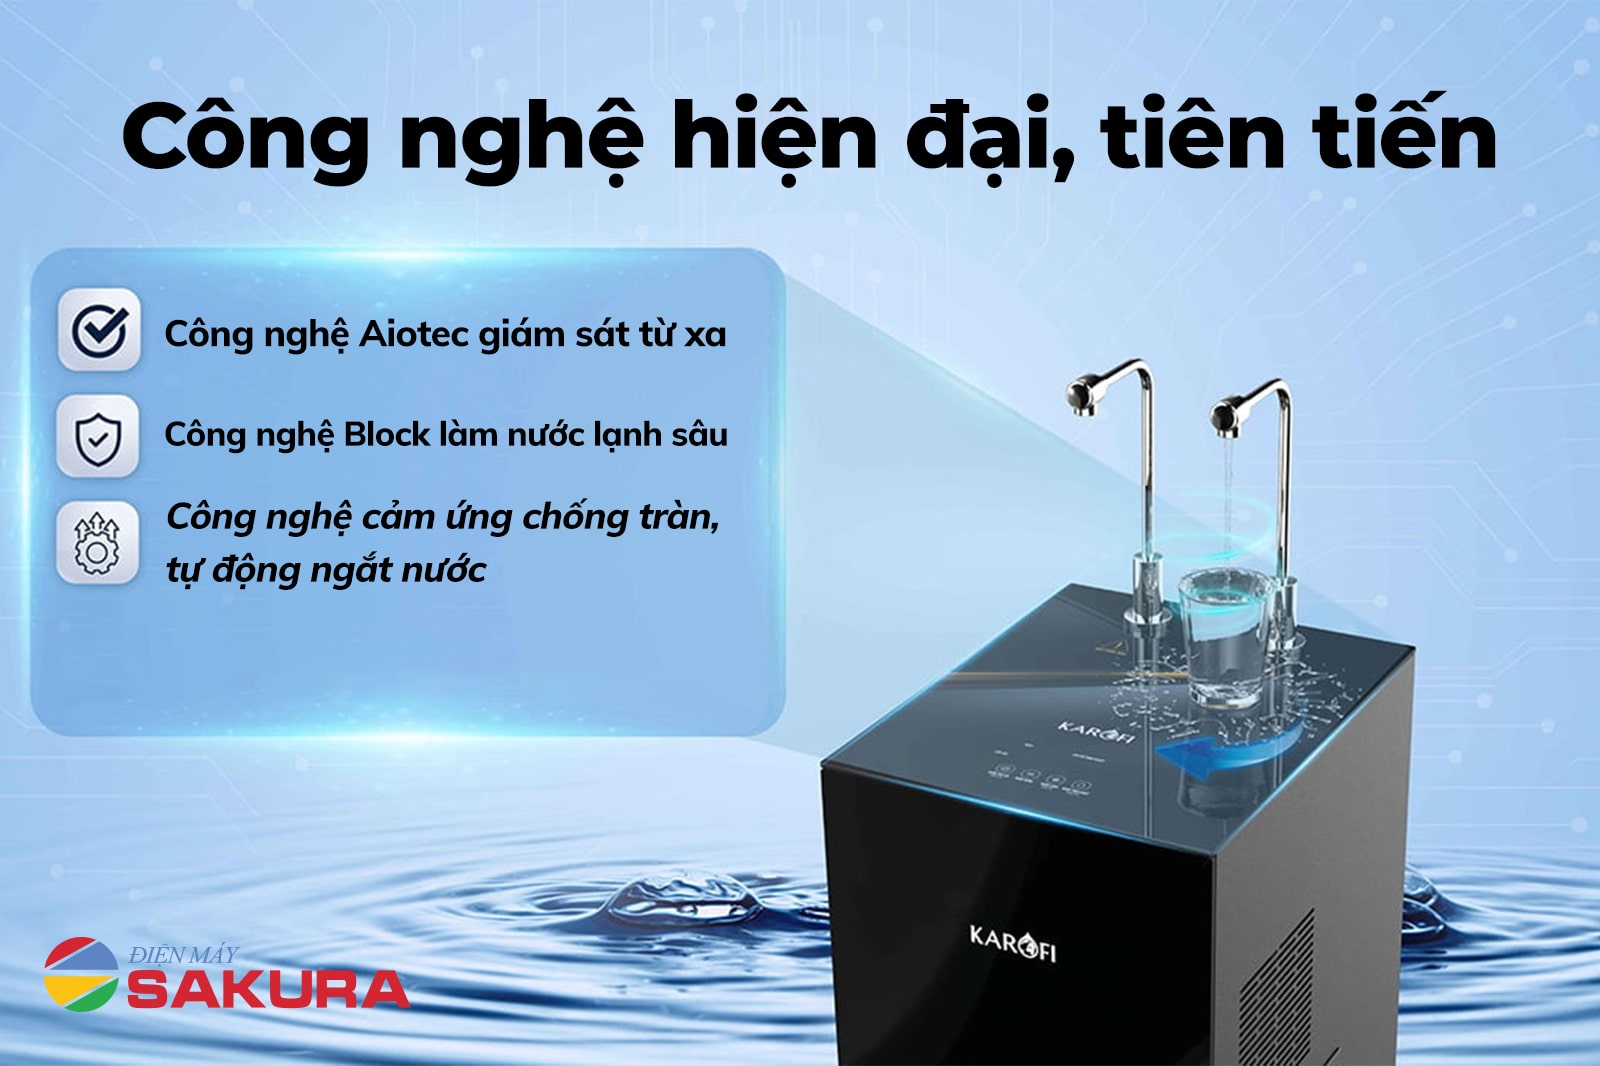 Công nghệ hiện đại, tiên tiến trong máy lọc nước nóng lạnh KAD - N89